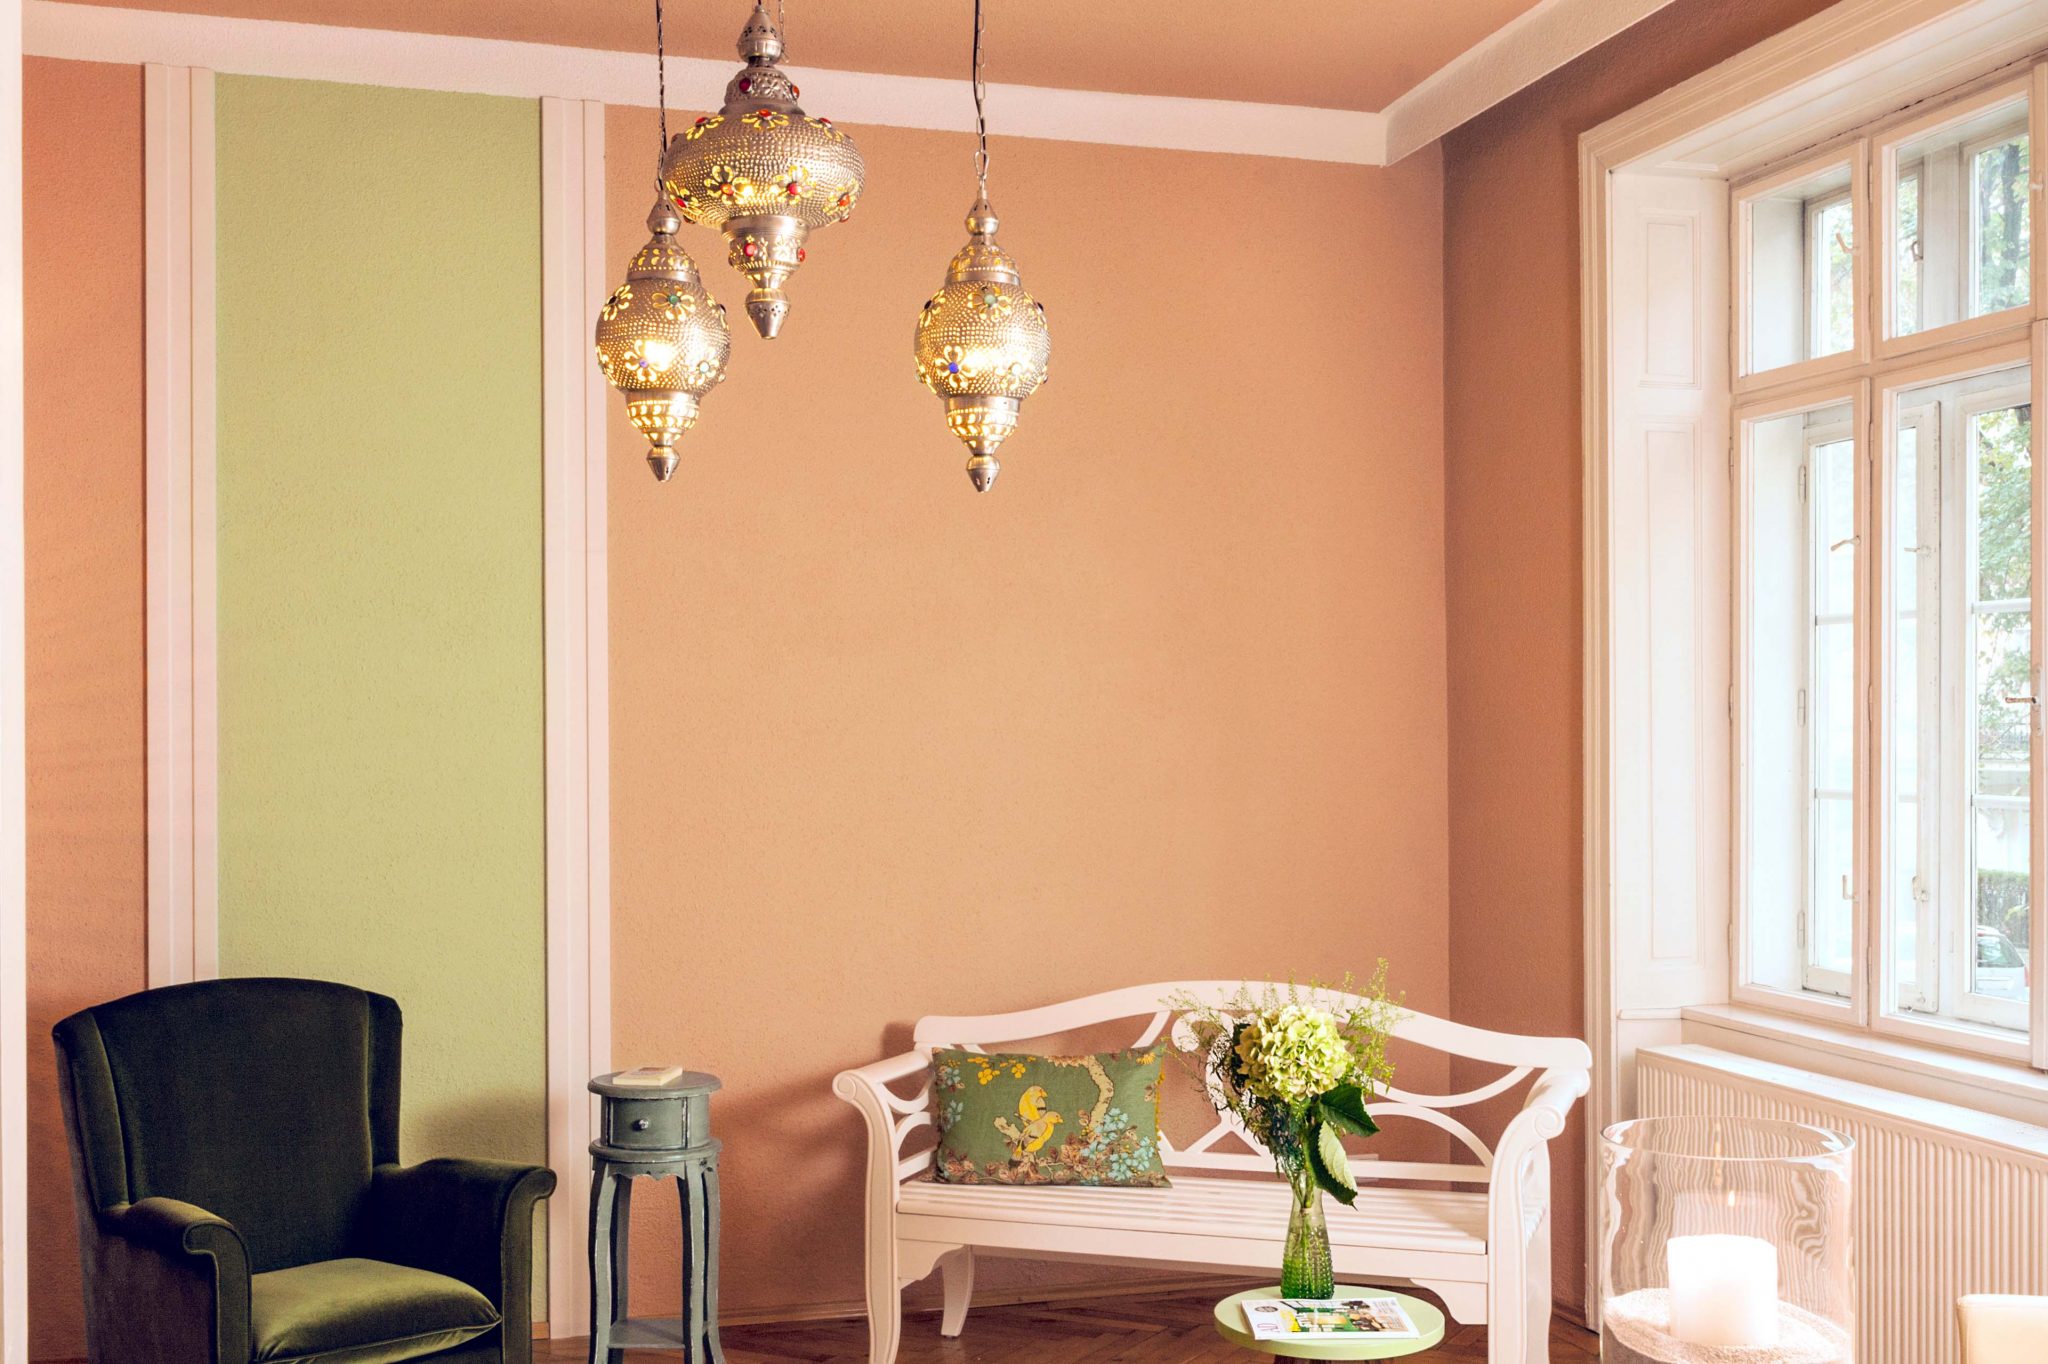 Zimmer eingerichtet mit weißer Bank, grünem Samtsessel, kleinem Tisch mit Blumendekoration und Kerze, orientalische Deckenlampe und Wand in den Farben Cappuccino und lindgrün.